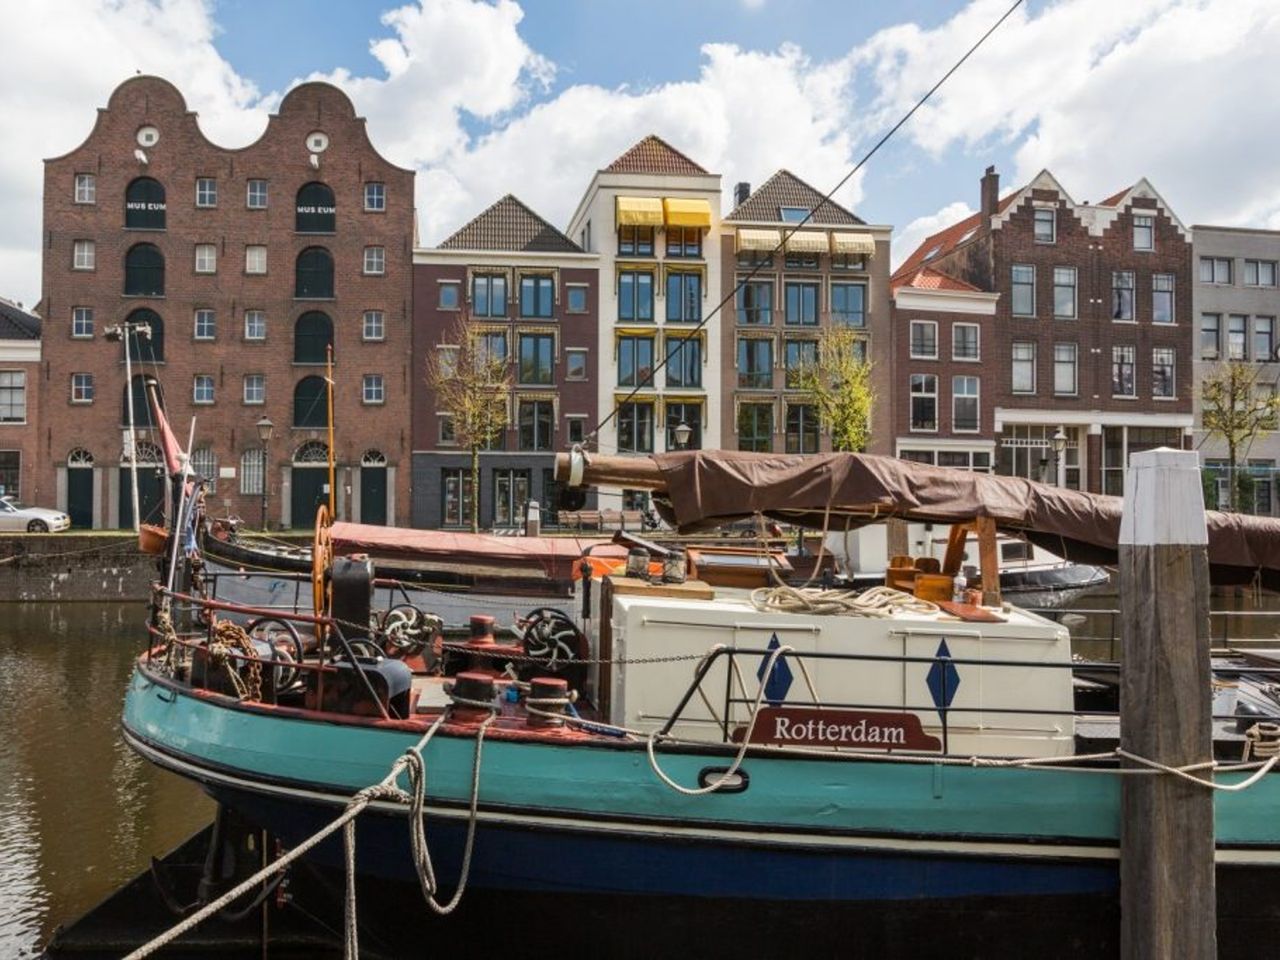 Небоскрёбы+героическое прошлое+порт = Роттердам! | Цена 250€, отзывы, описание экскурсии